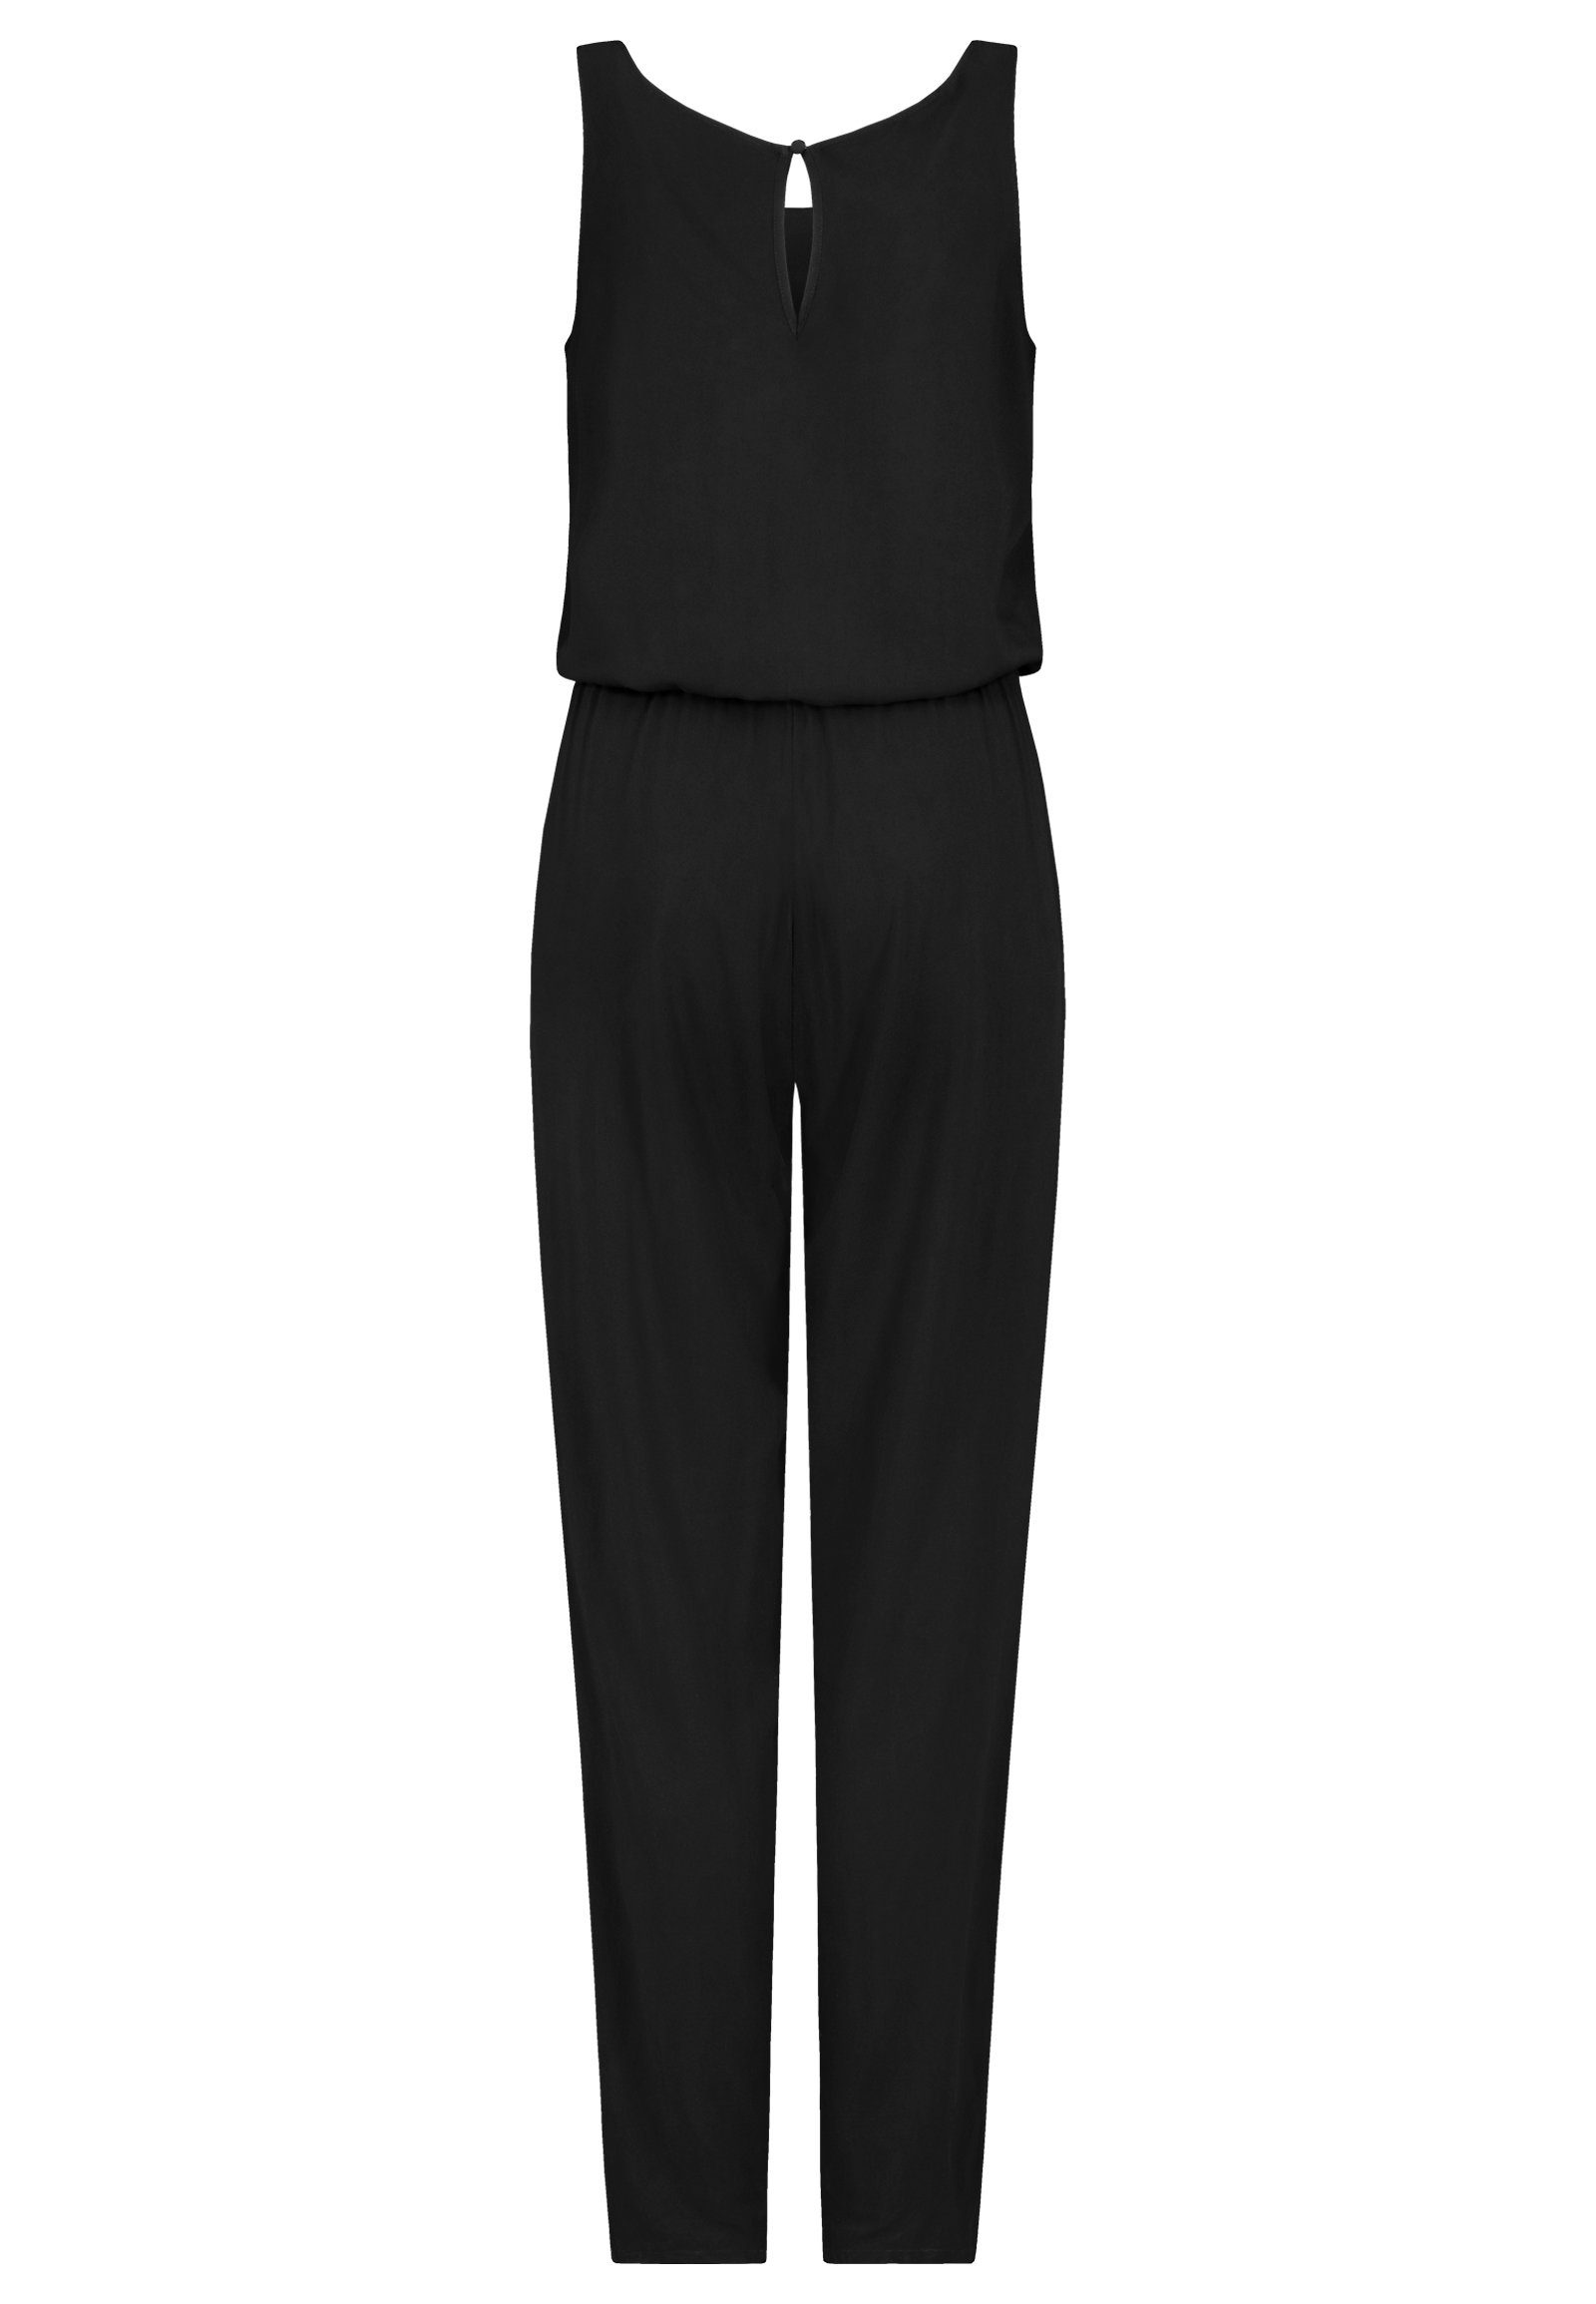 Einteiler Overall Gürtel Damen SUBLEVEL lange Schwarz Sommer Binde Hose Overall Jumpsuit